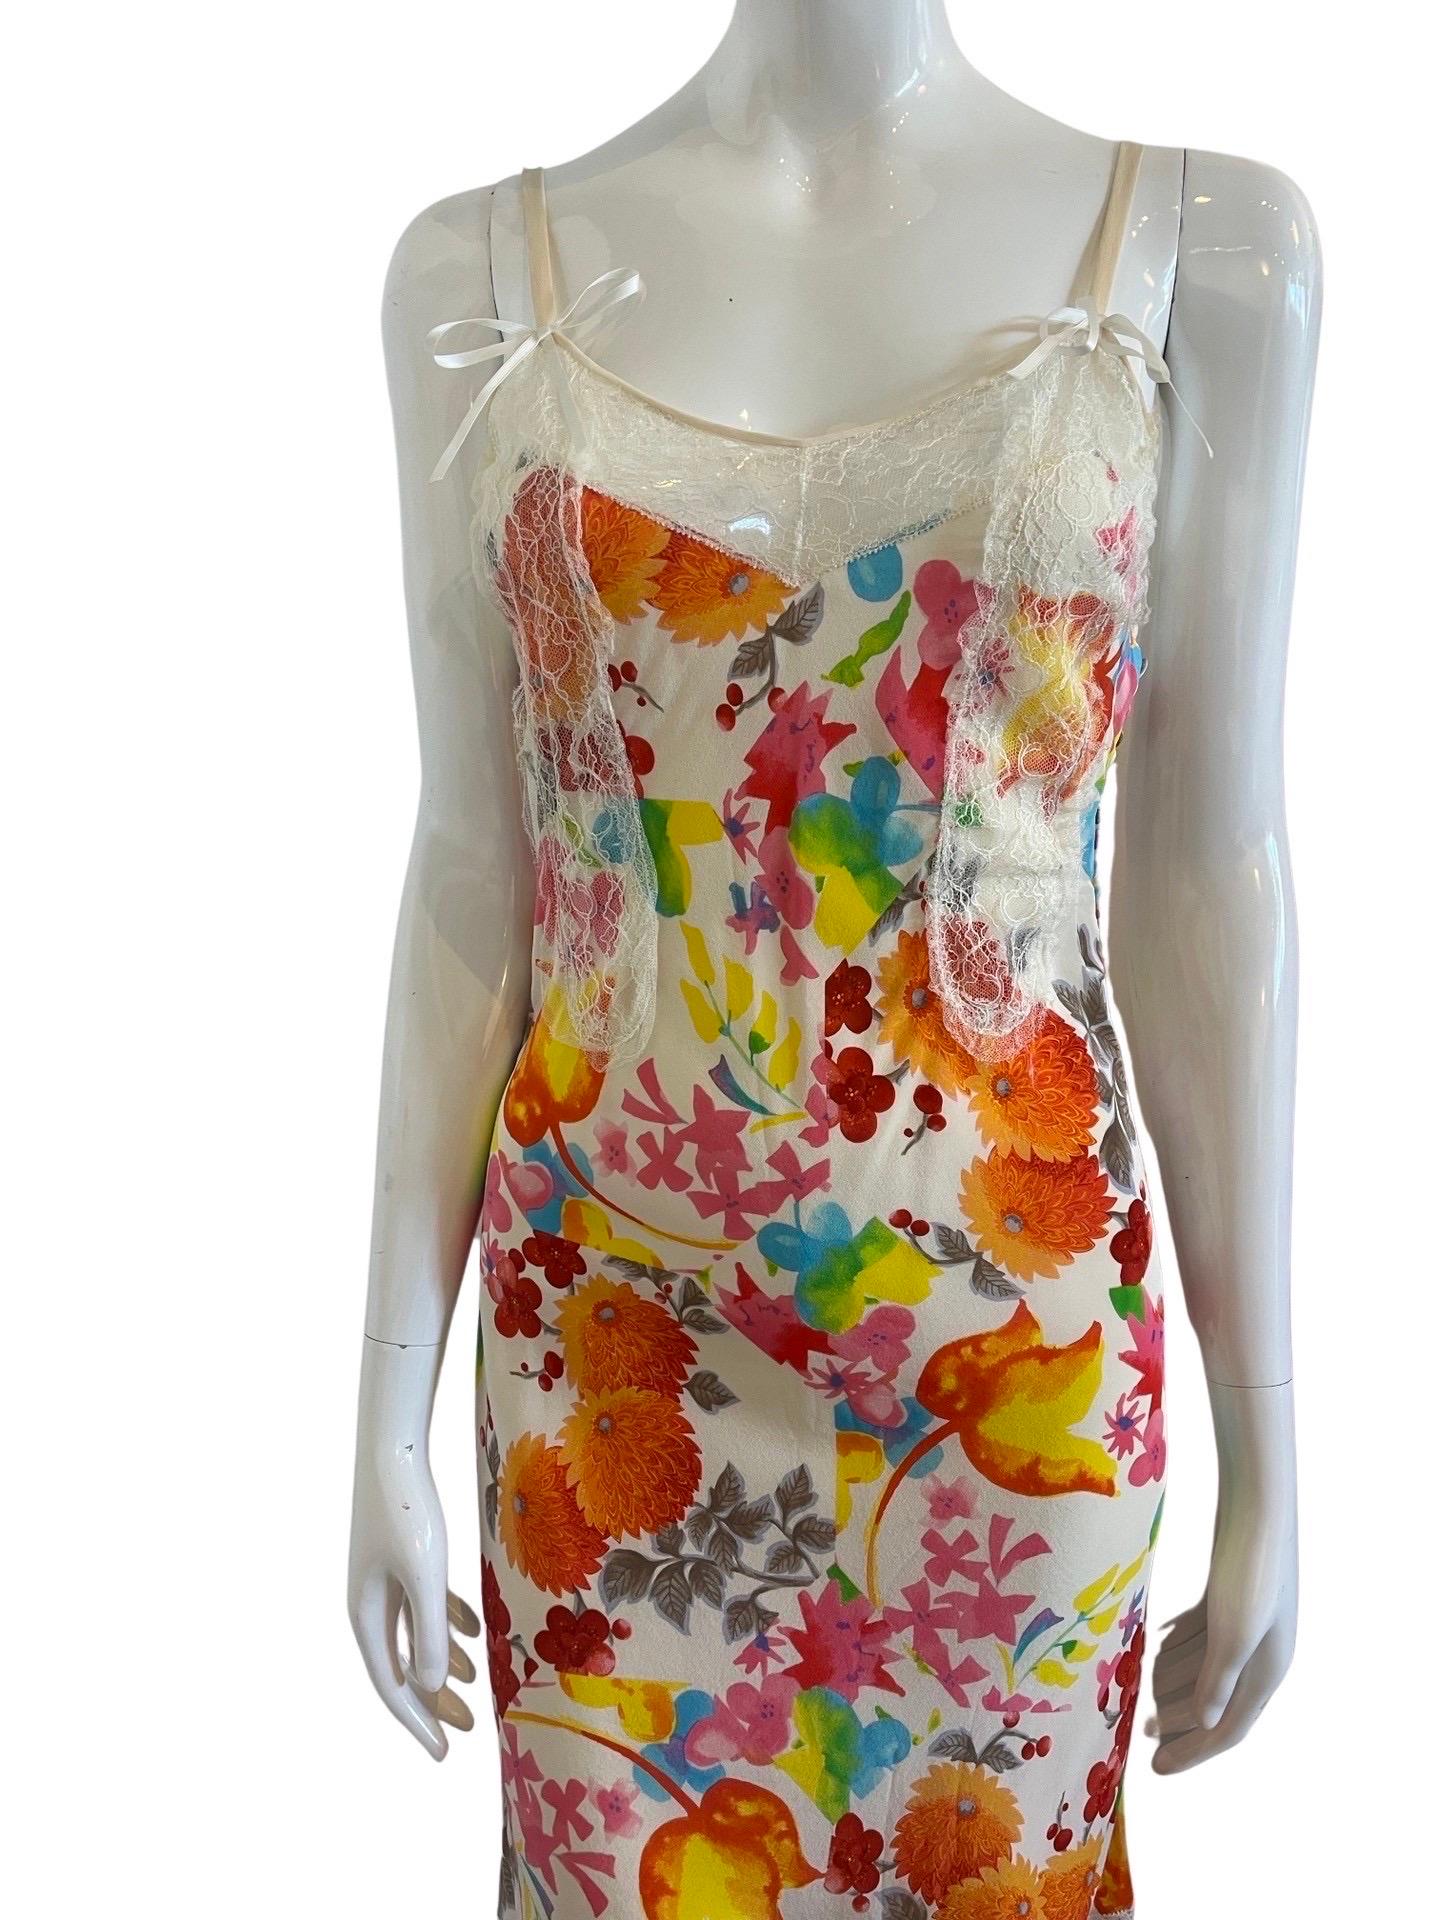 Superbe robe Christian Dior by John Galliano d'une collection du début des années 00.  Il s'agit d'une robe mi-longue en soie avec des détails de dentelle en soie imprimée de couleurs vives de chrysanthèmes et d'imprimés floraux.  Reprenant le